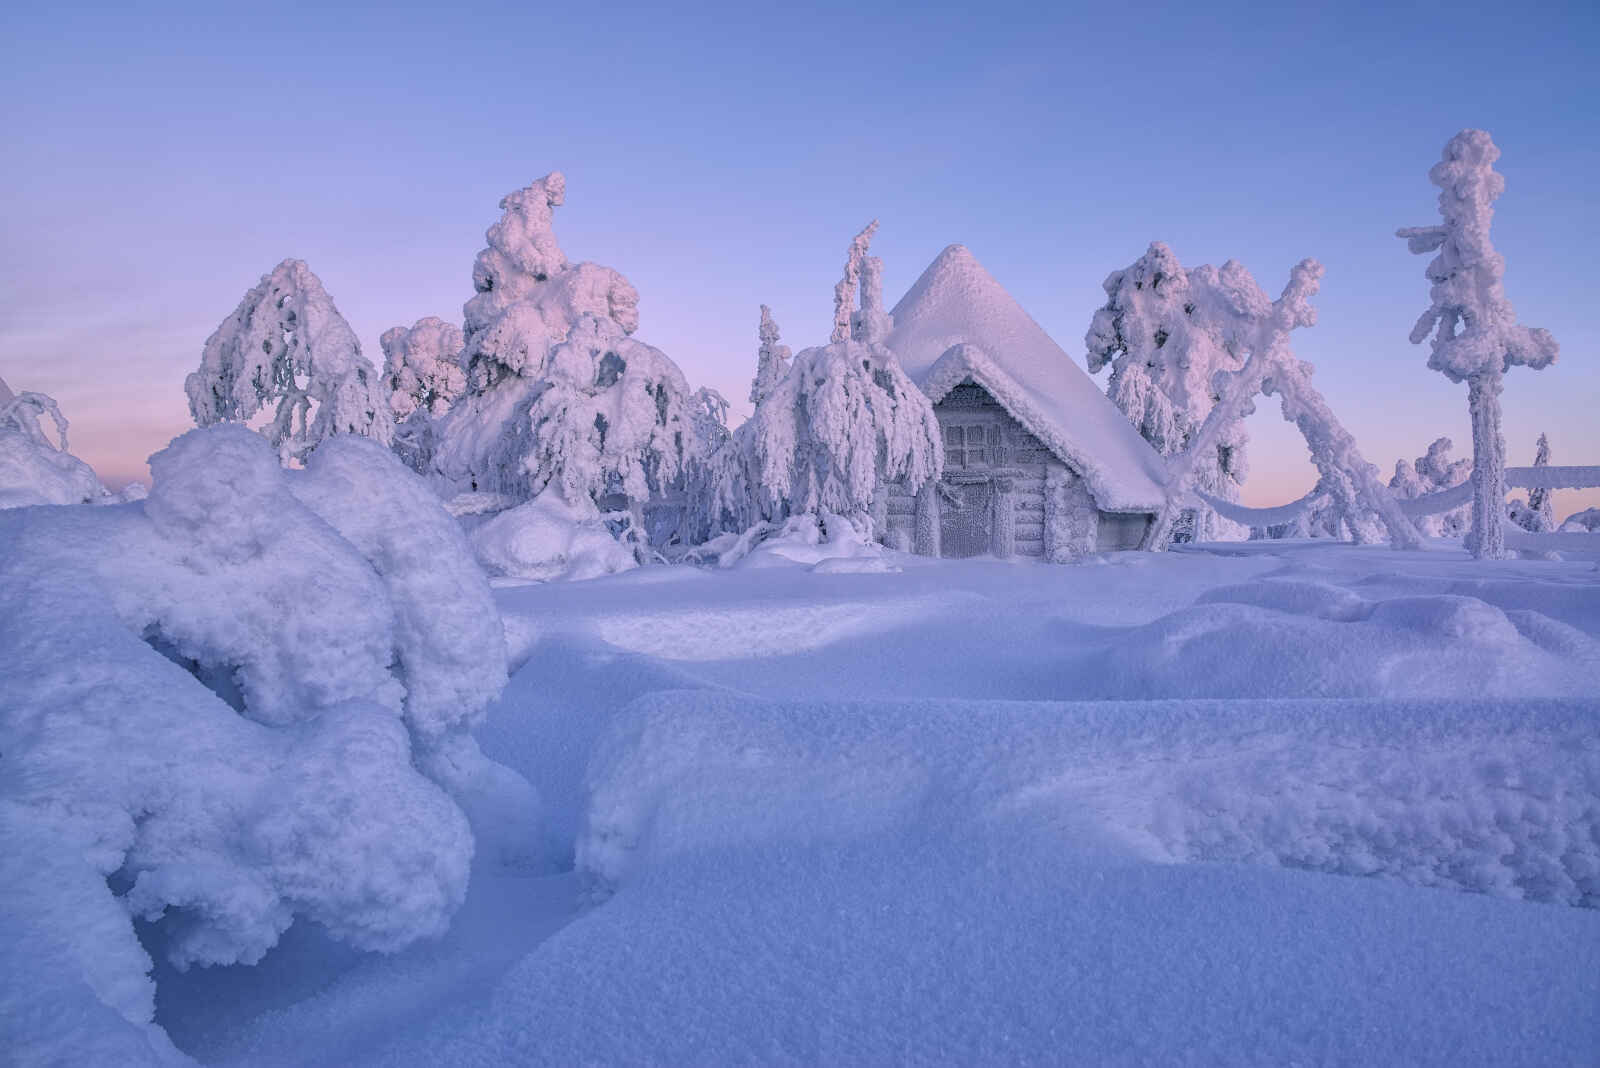 Finlande - Laponie - Luosto - Rovaniemi - Combiné Tradition en Laponie